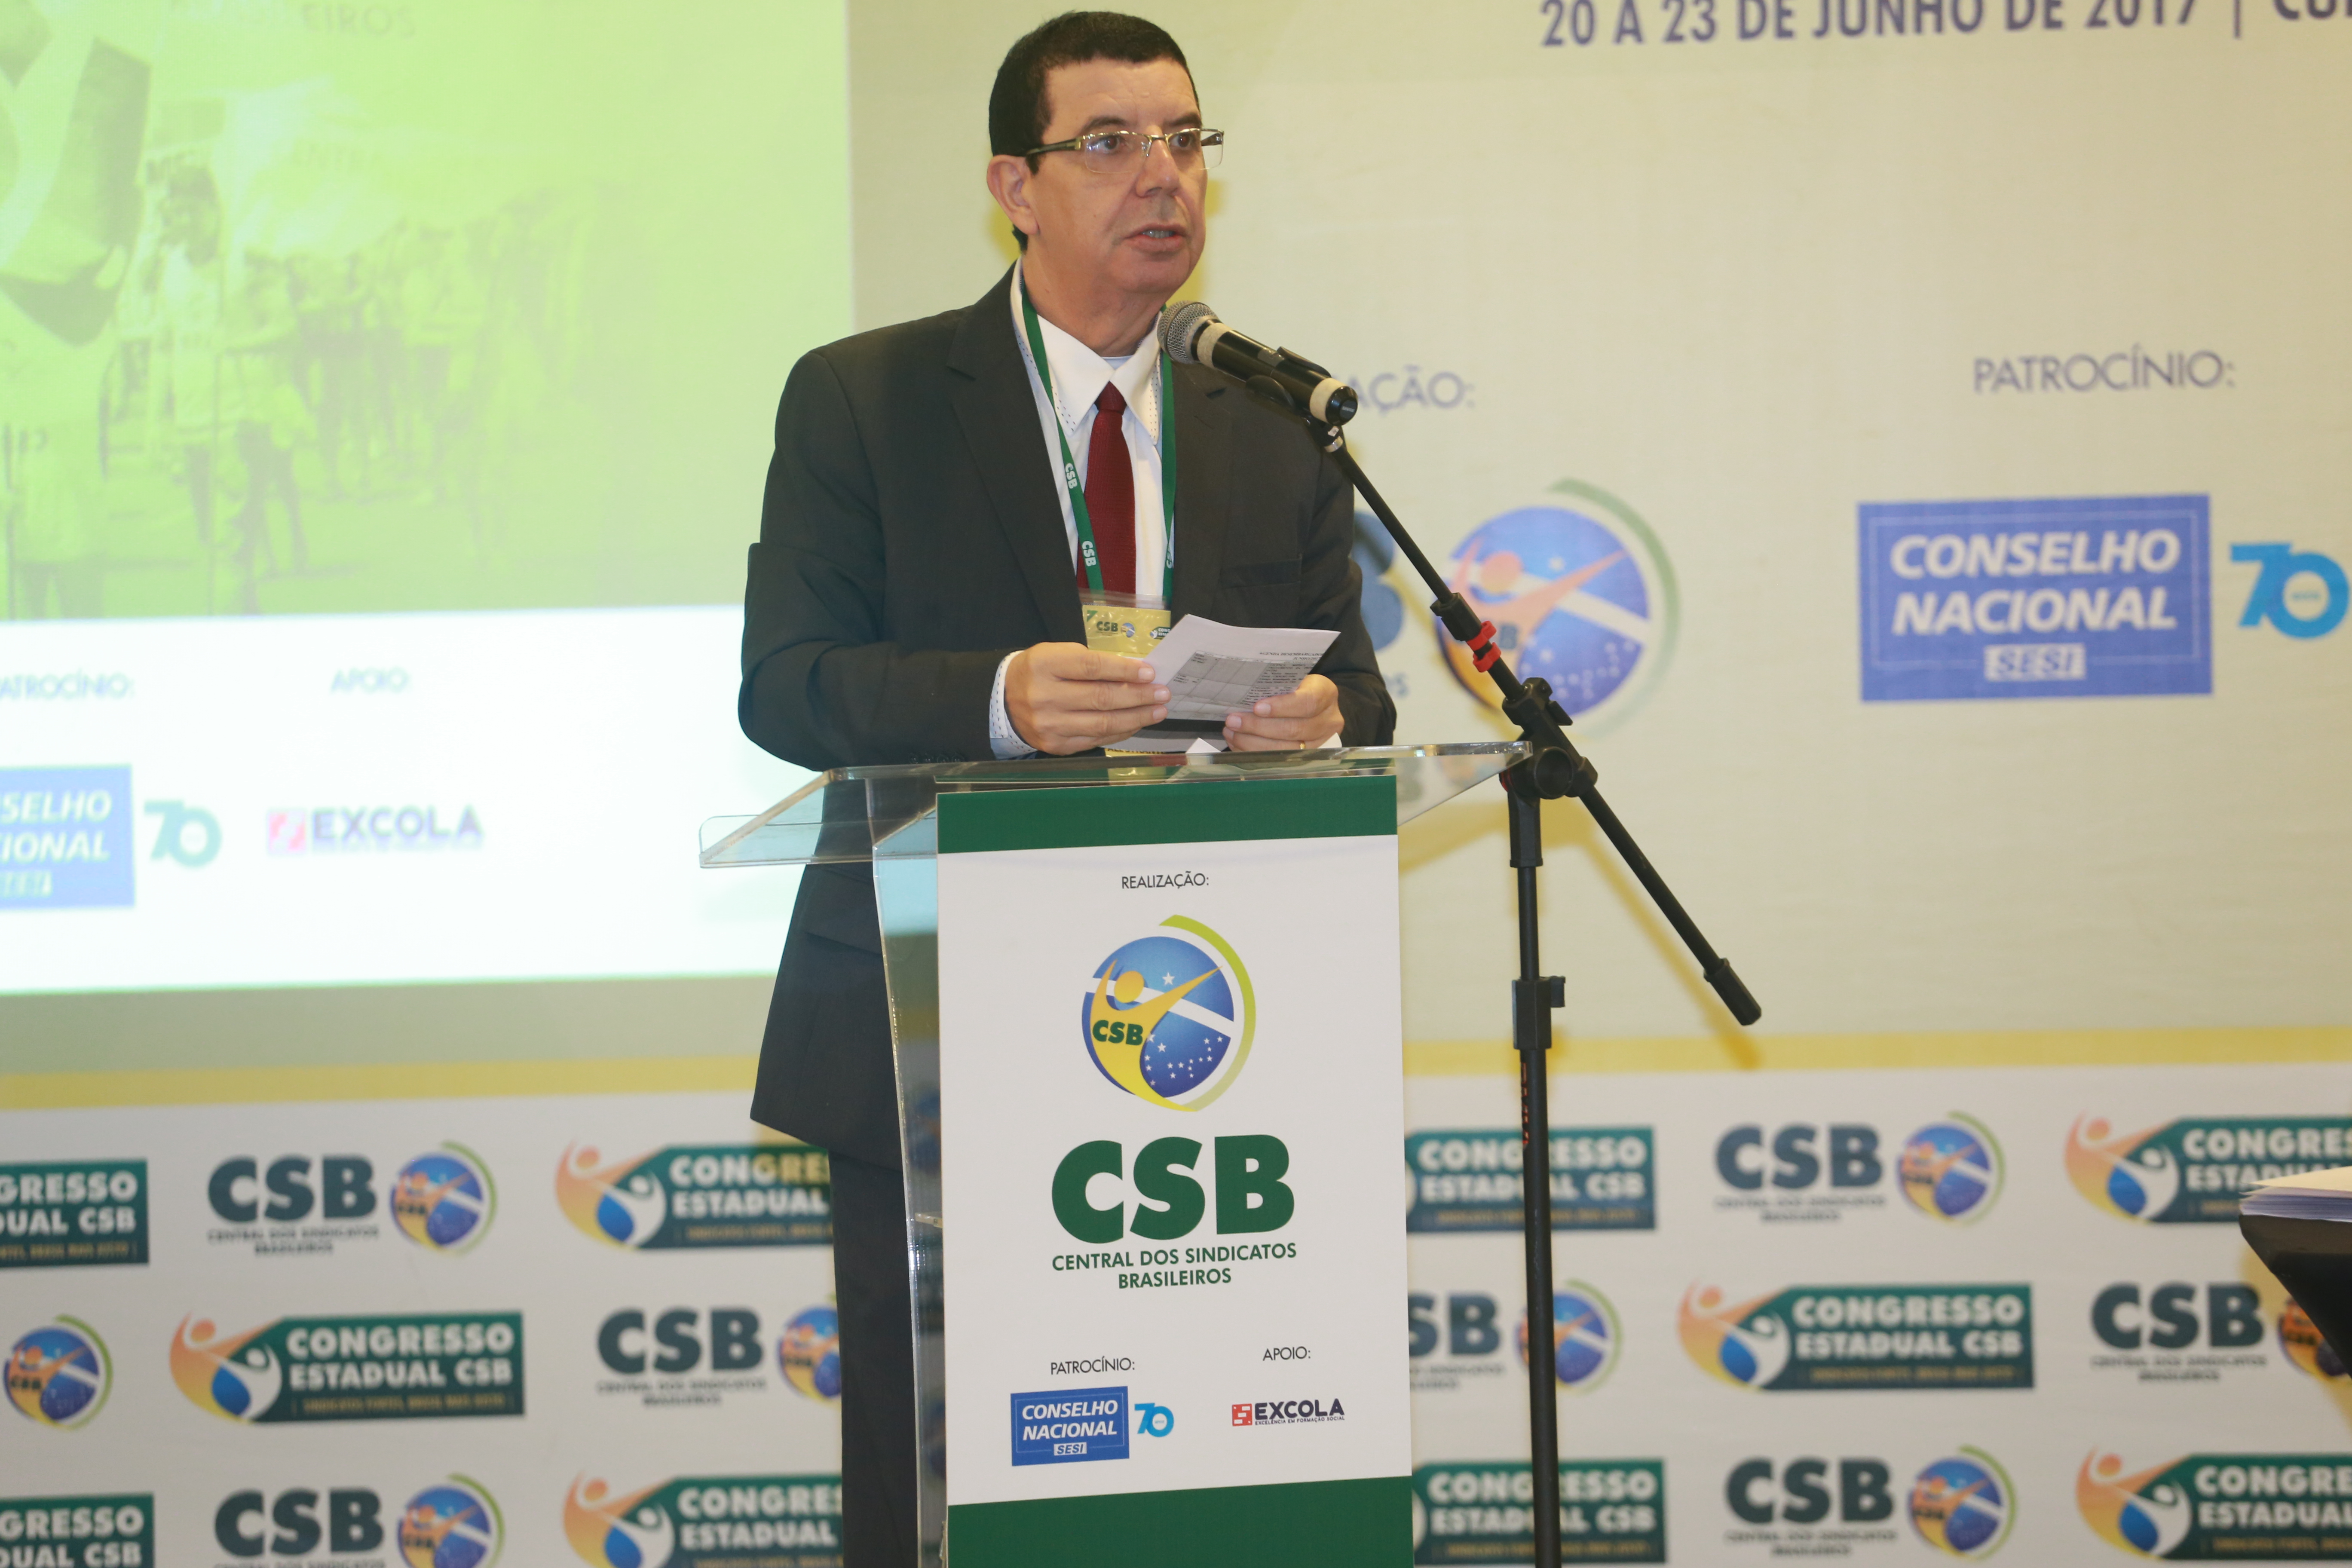 Desembargador de Mato Grosso destaca o papel do Estado e da Constituição nas garantias sociais